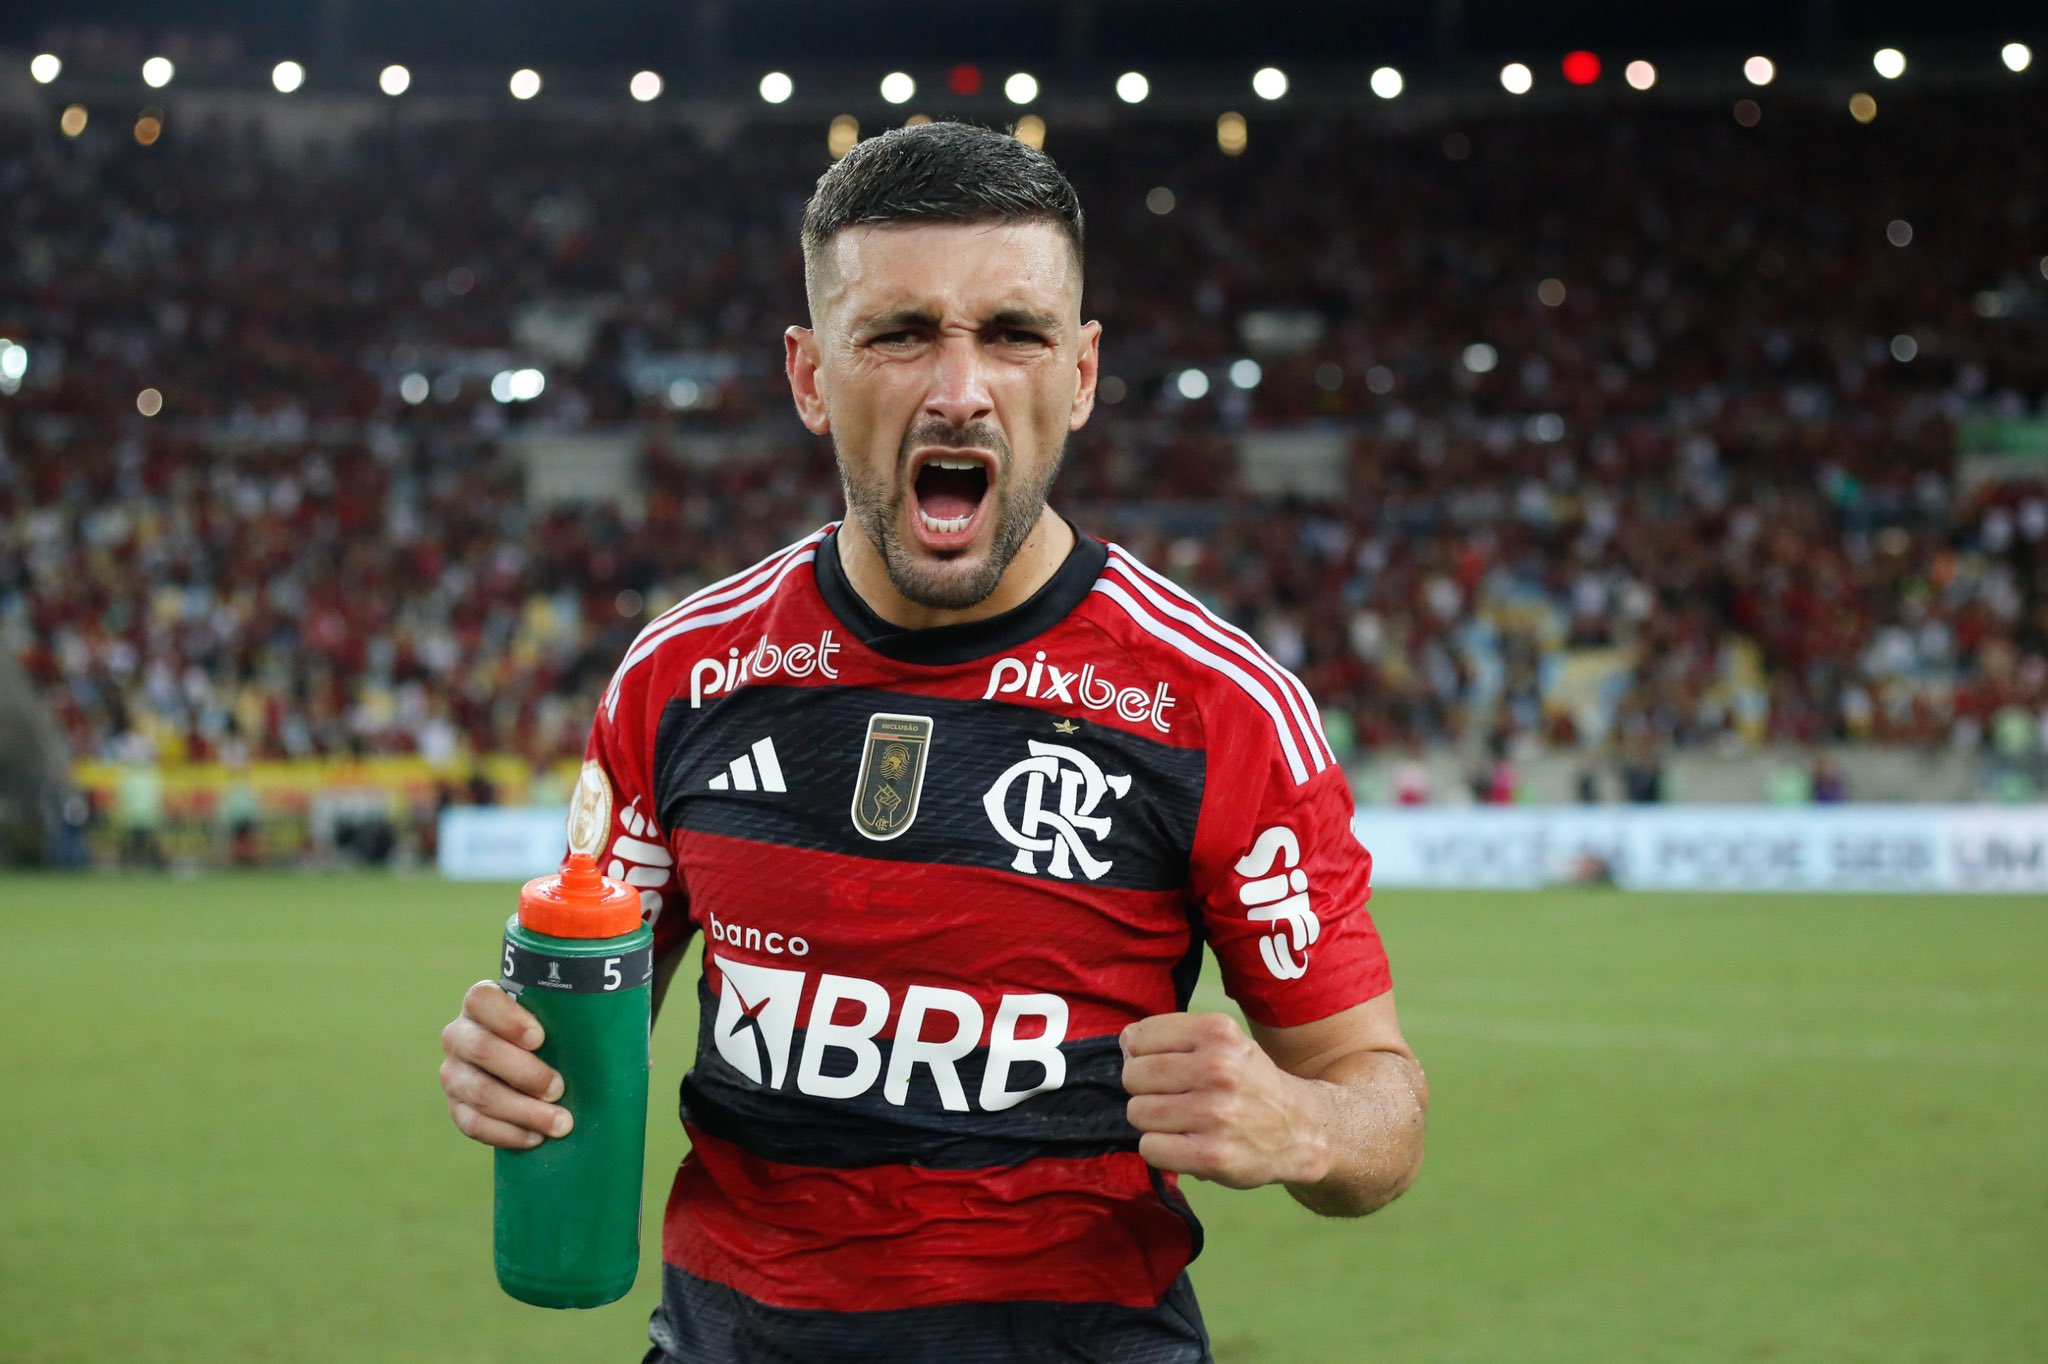 VÍDEO: Arrascaeta faz mágica, Flamengo vence Bragantino e agita Brasileirão de vez; veja melhores momentos